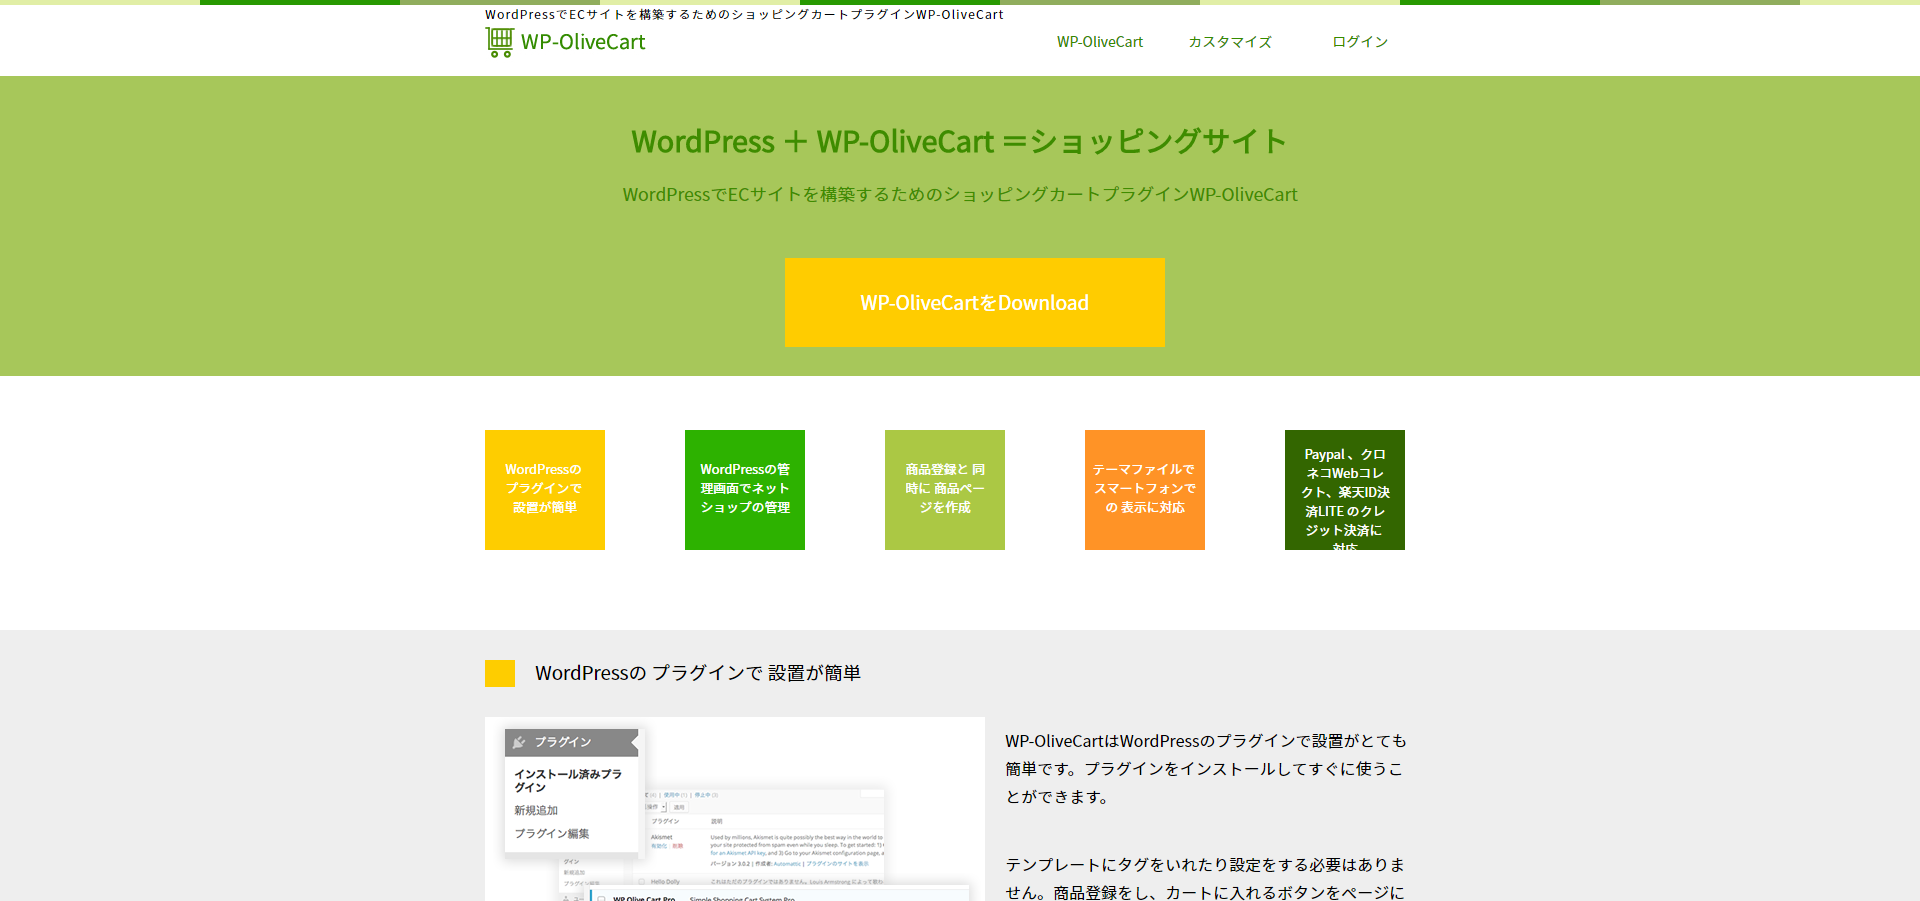 「WP-OliveCart」の公式サイト